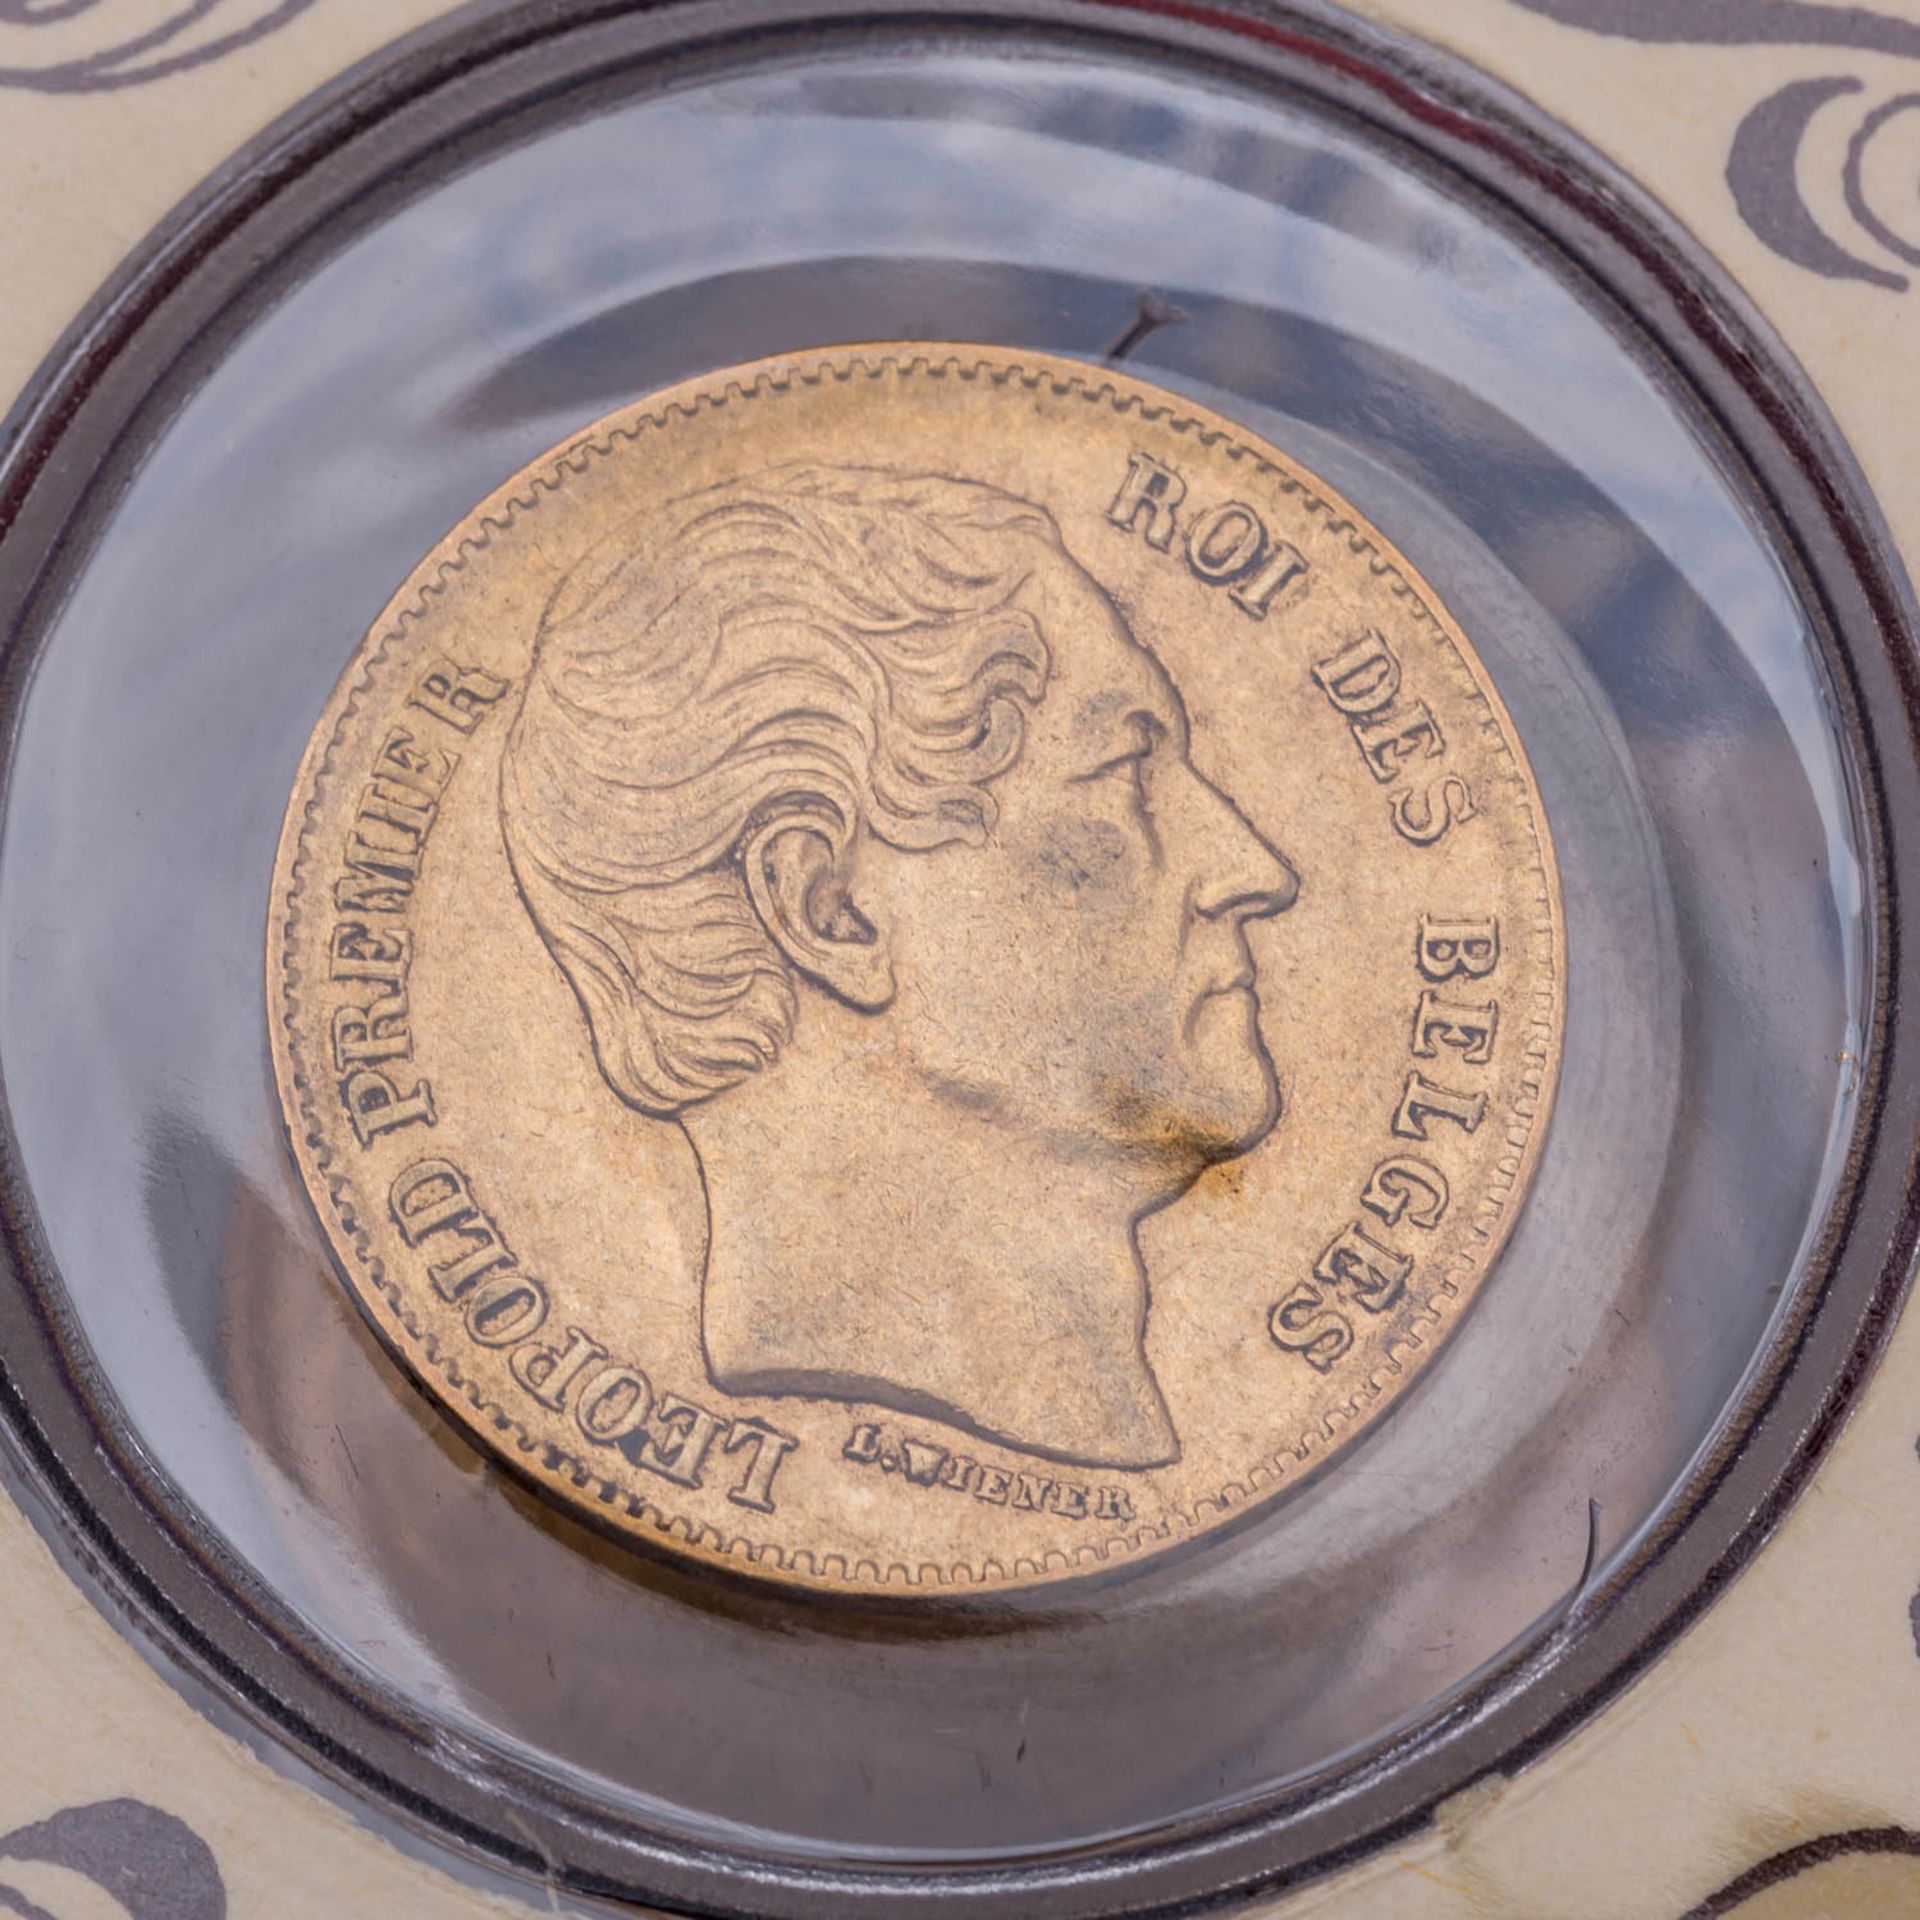 GOLD - Goldmünzen aus Europa und Nordamerika in 3 Alben. 49 Stück. - Image 7 of 9